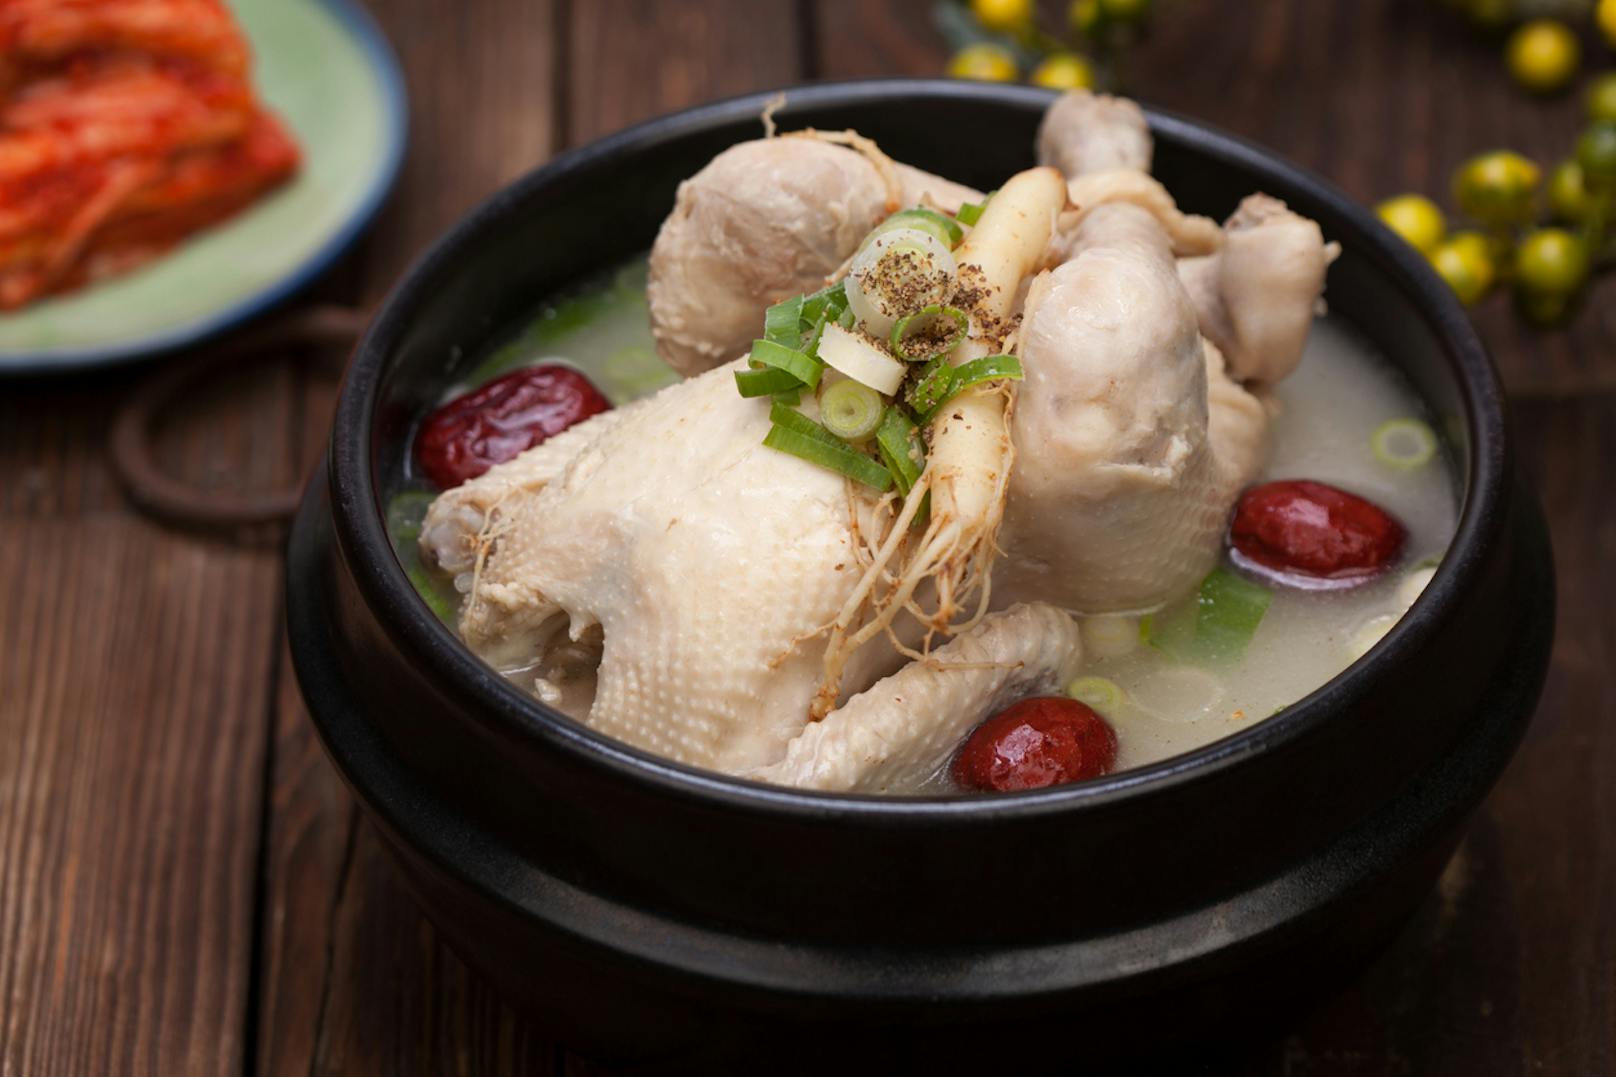 <strong>Südkorea</strong>:&nbsp;<strong>Samgyetang</strong> heißt nichts anderes als Hühnchensuppe auf Koreanisch. Die wird meist mit einem kleinen Huhn zubereitet, das mit Klebreis, Knoblauch, Ginseng und chinesischen Datteln (Jujube) gefüllt ist.